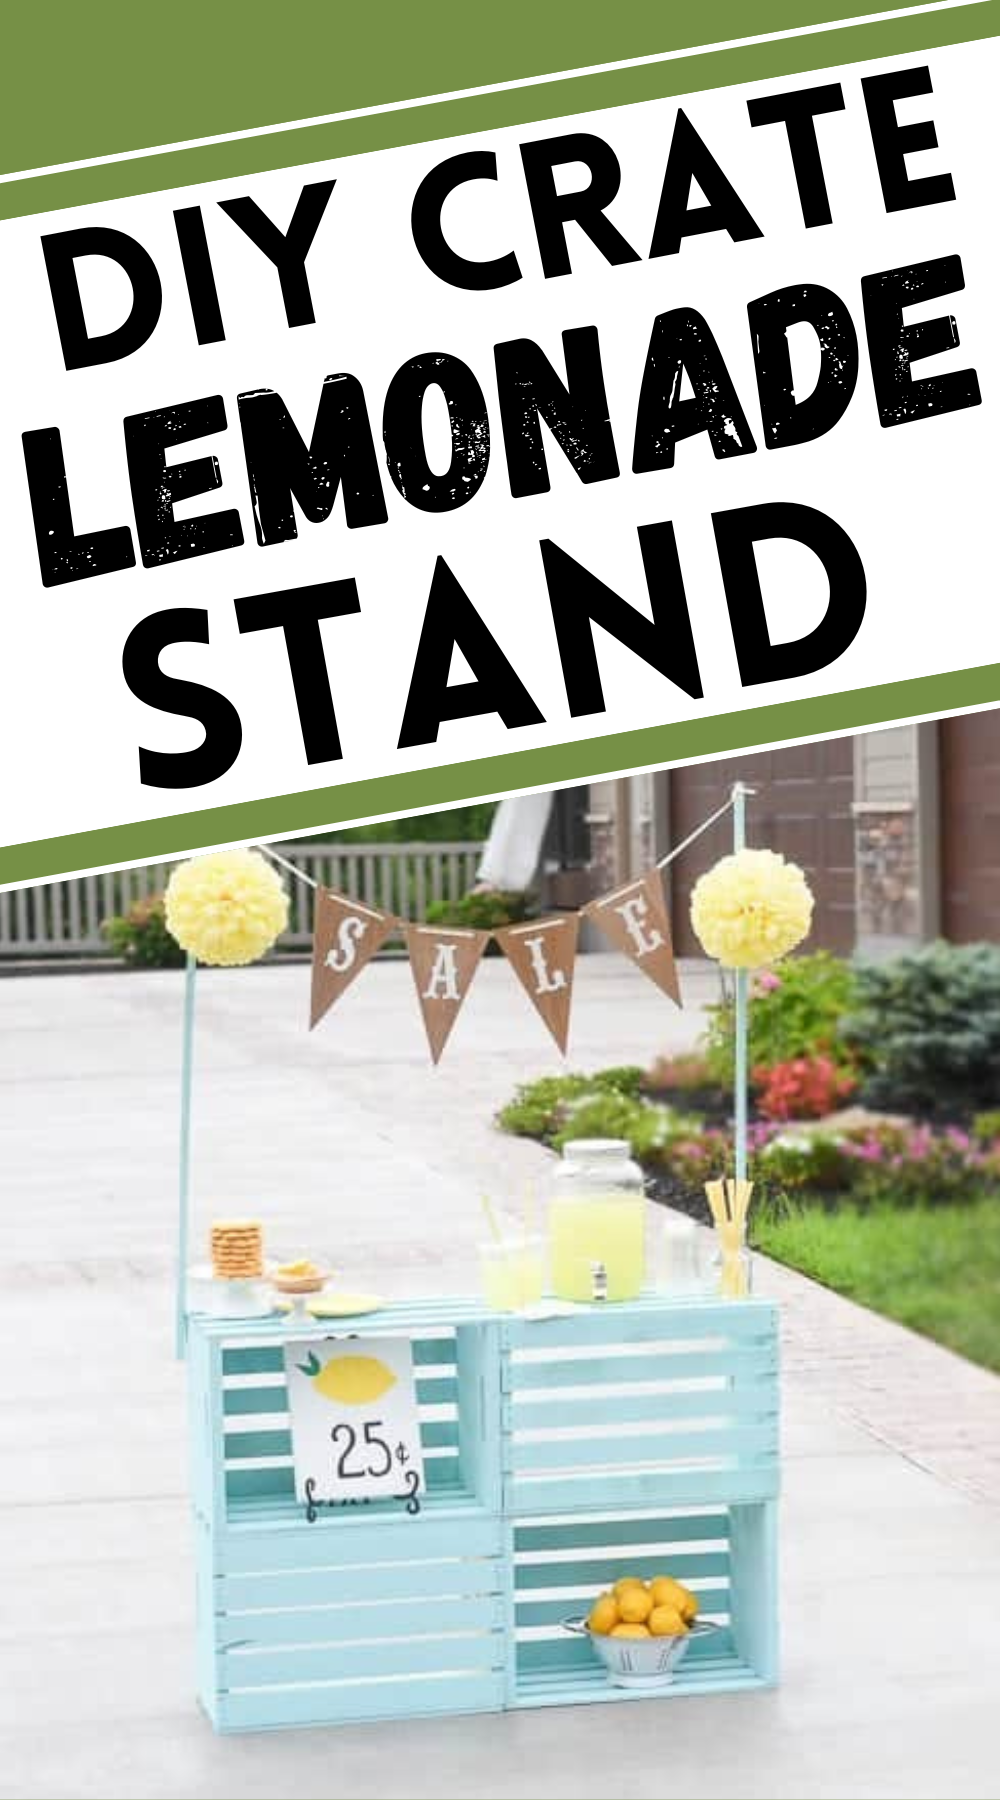 Crate Lemonade Stand